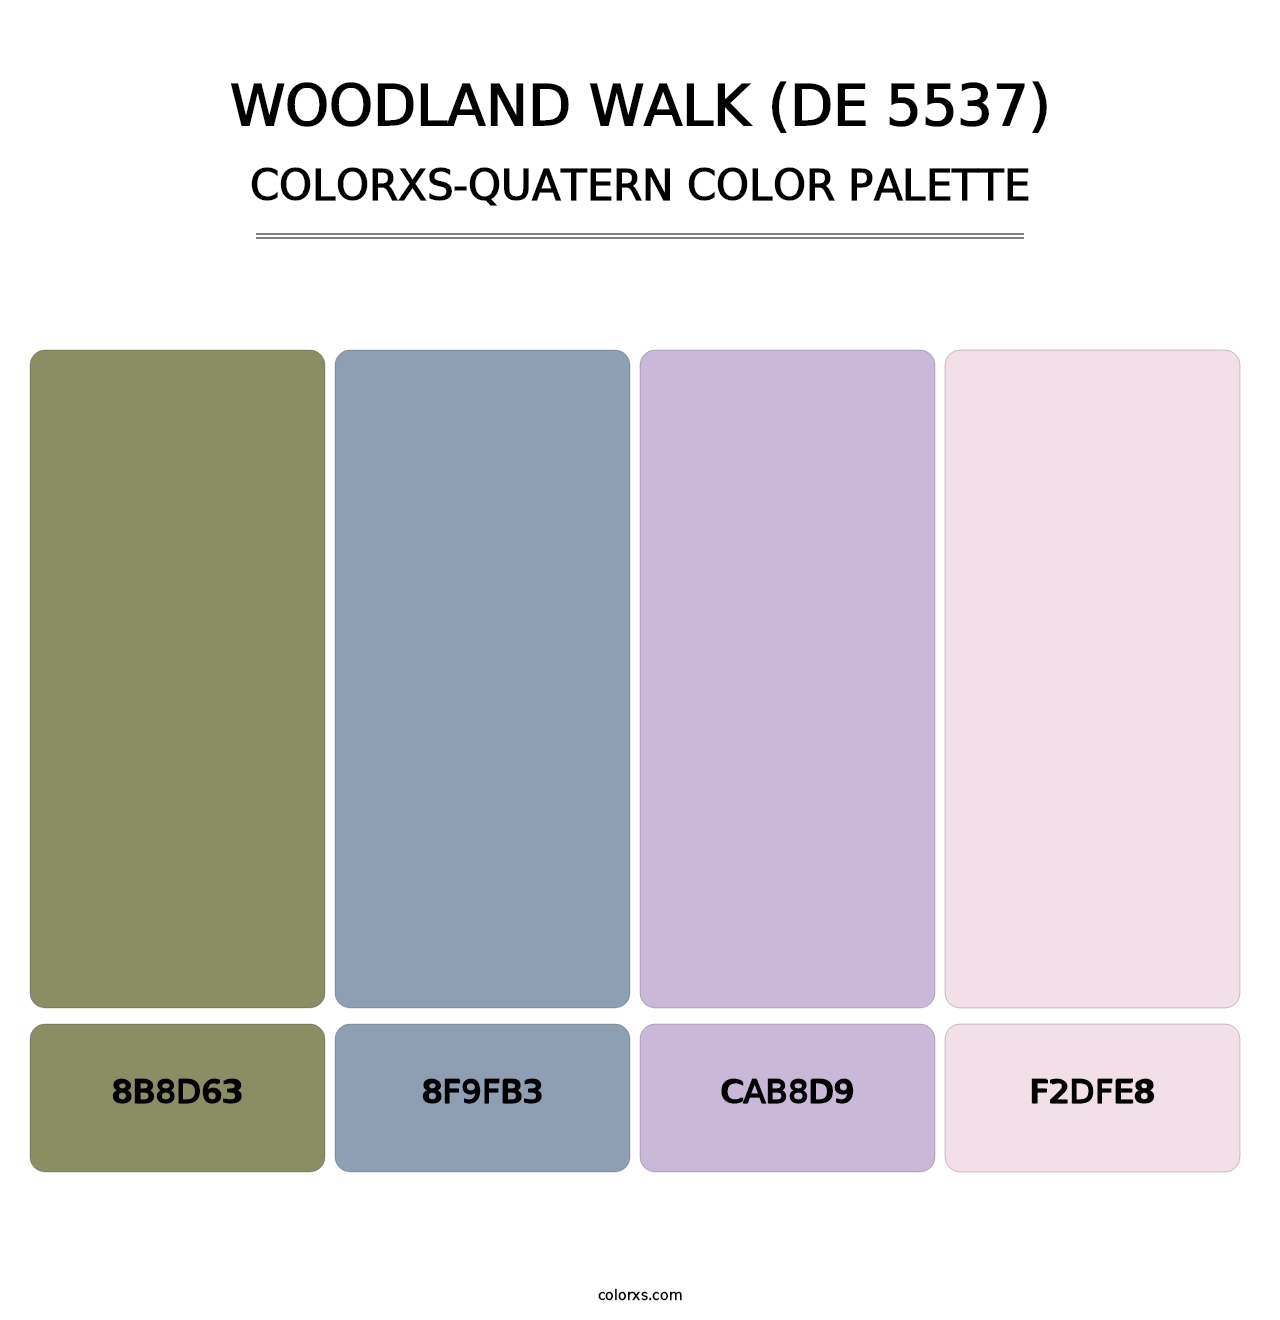 Woodland Walk (DE 5537) - Colorxs Quatern Palette